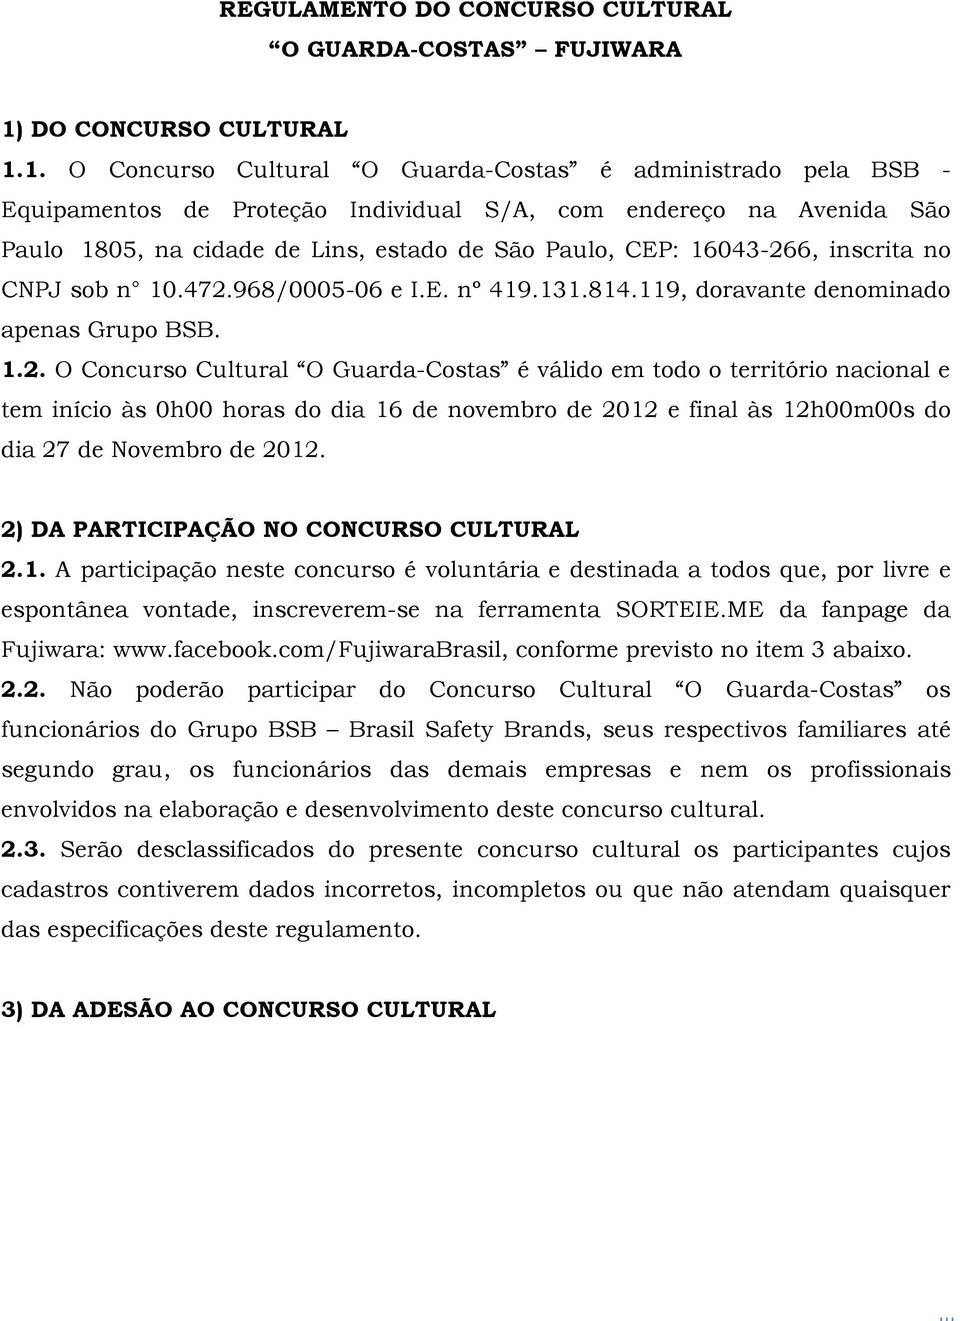 1. O Concurso Cultural O Guarda-Costas é administrado pela BSB - Equipamentos de Proteção Individual S/A, com endereço na Avenida São Paulo 1805, na cidade de Lins, estado de São Paulo, CEP: